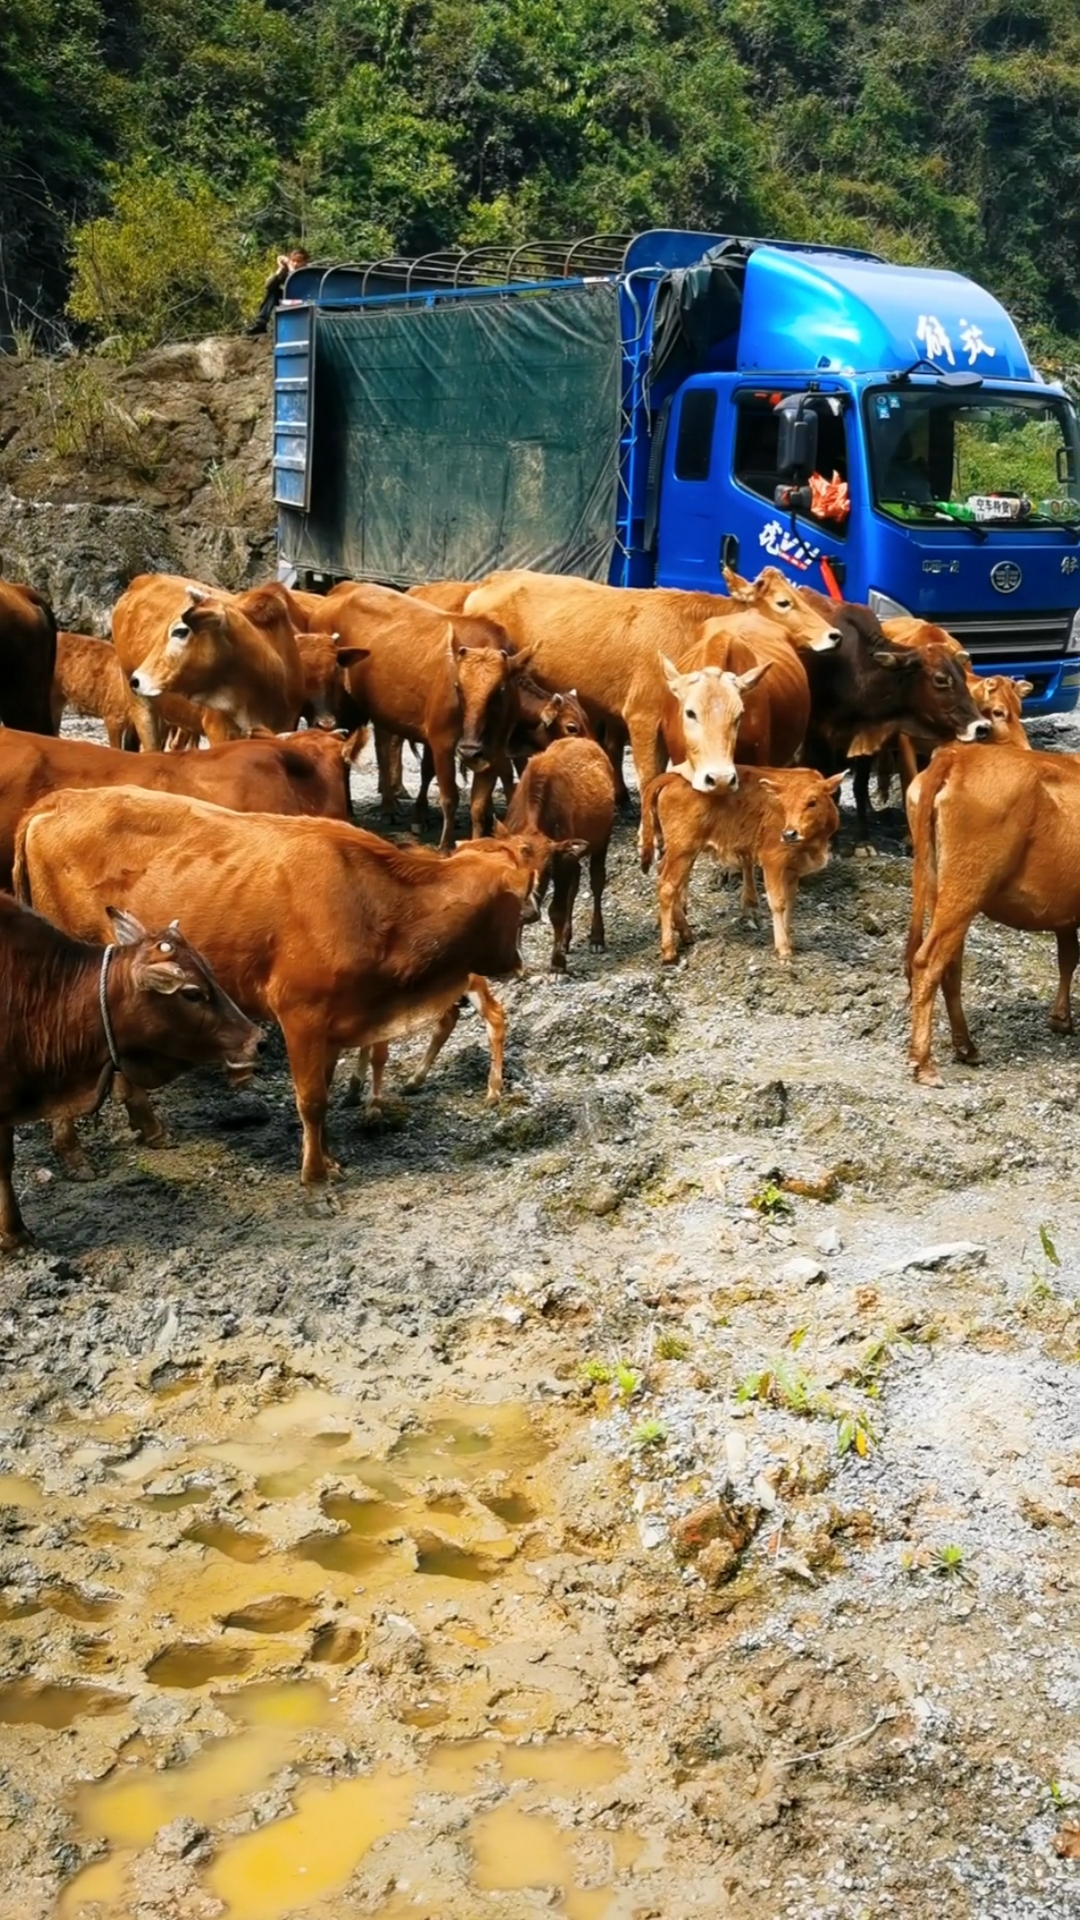 养牛23头牛养殖户要15万贵州老板过来实地看牛砍价到148万满心欢喜的